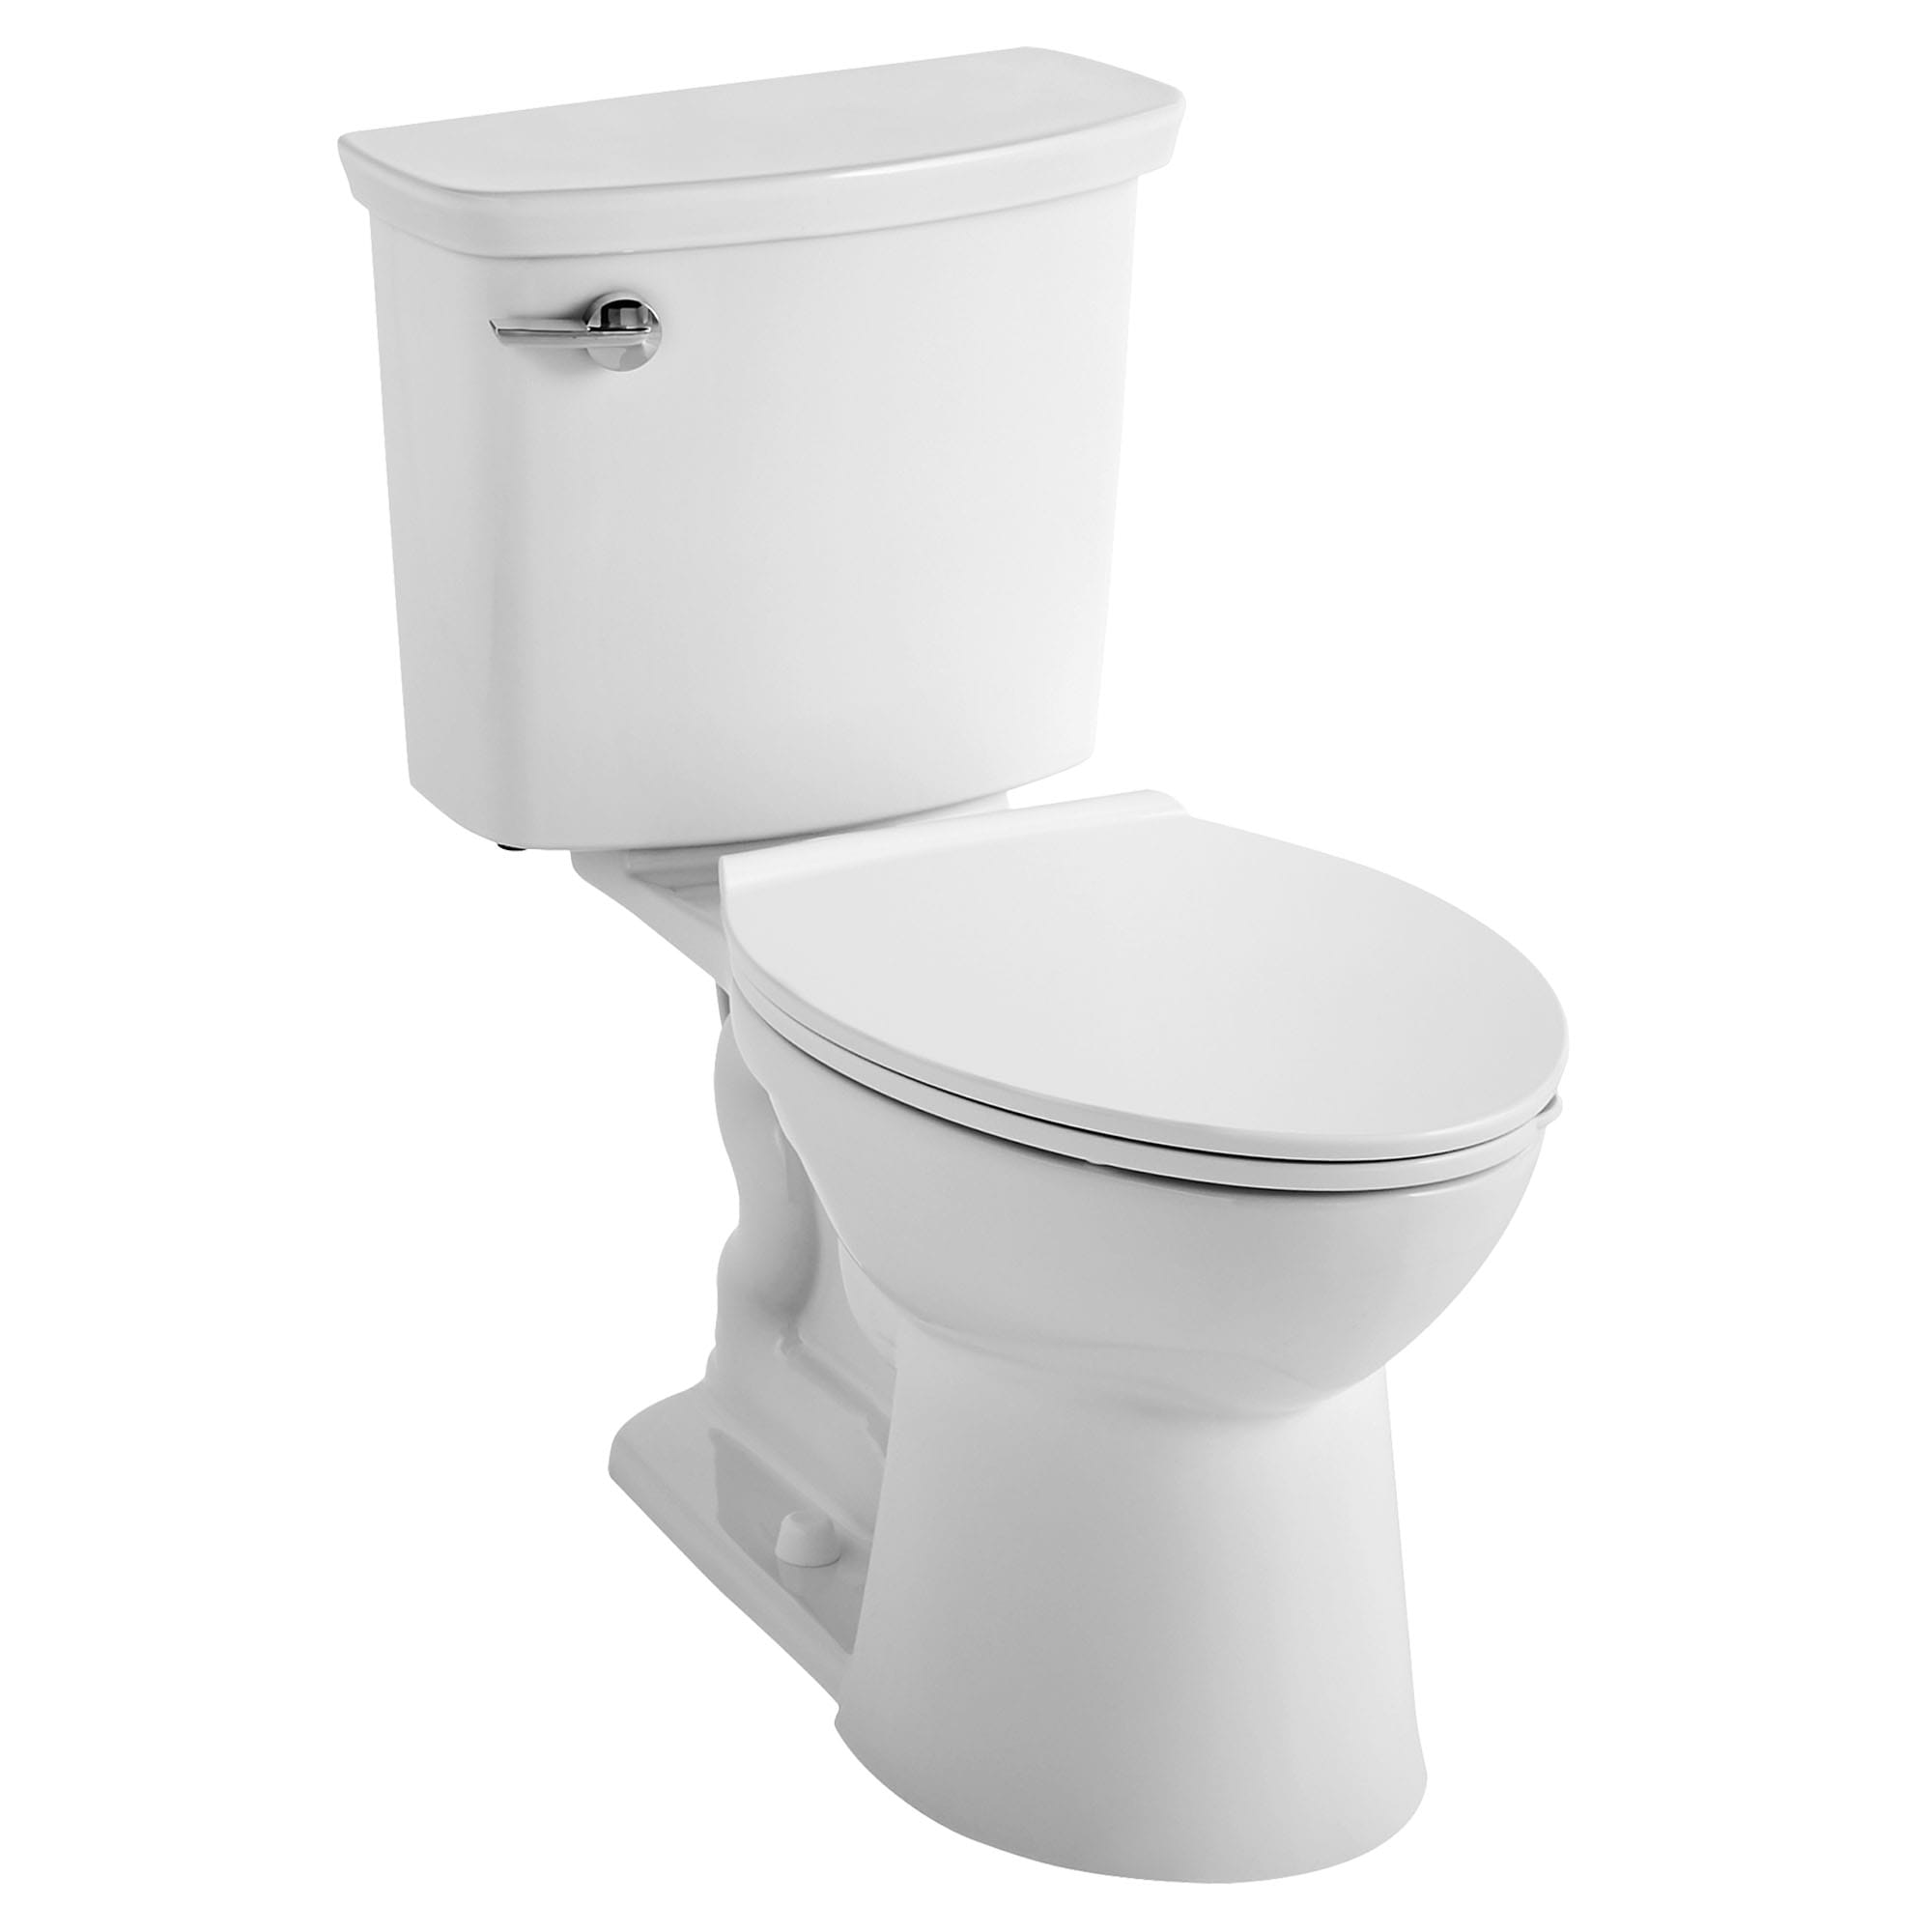 Toilette VorMax, 2 pièces, 1,28 gpc/4,8 lpc, à cuvette allongée à hauteur de chaise, sans siège